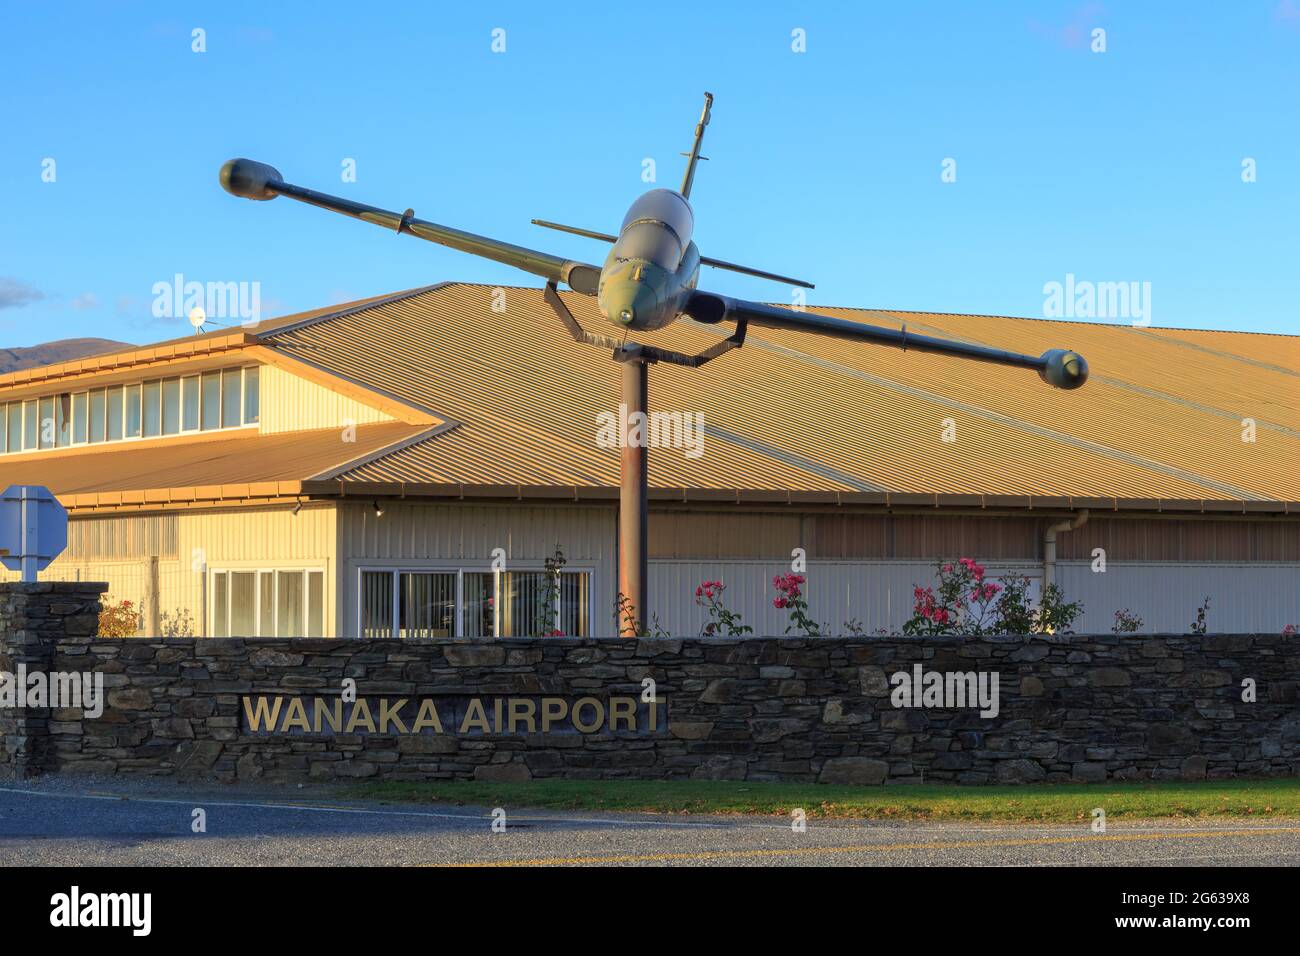 Der Flughafen in Wanaka, Neuseeland. Auf der Außenpole ist ein ehemaliges Flugzeug der neuseeländischen Luftwaffe Aermacchi MB-339 ausgestellt Stockfoto